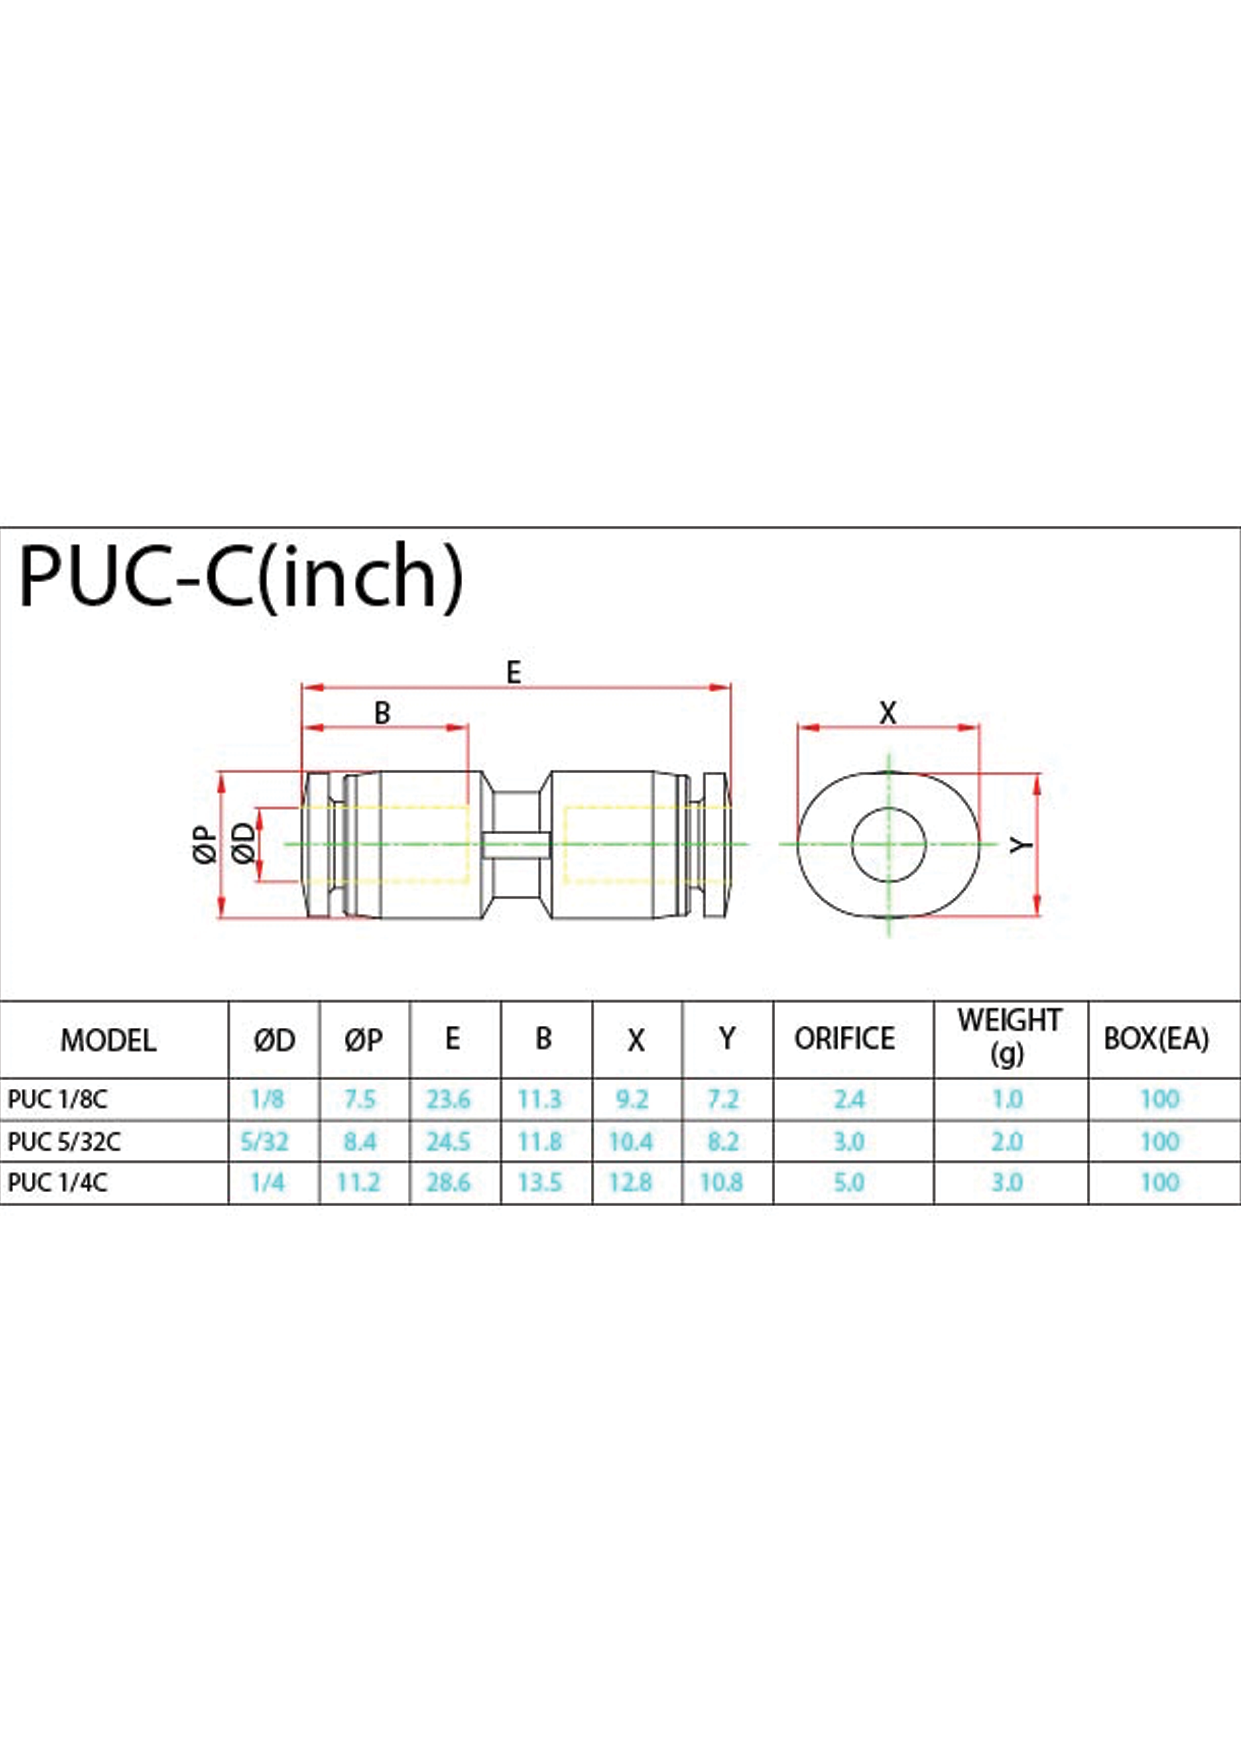 PUC-C (Inch) Data Sheet ( 97 KB )